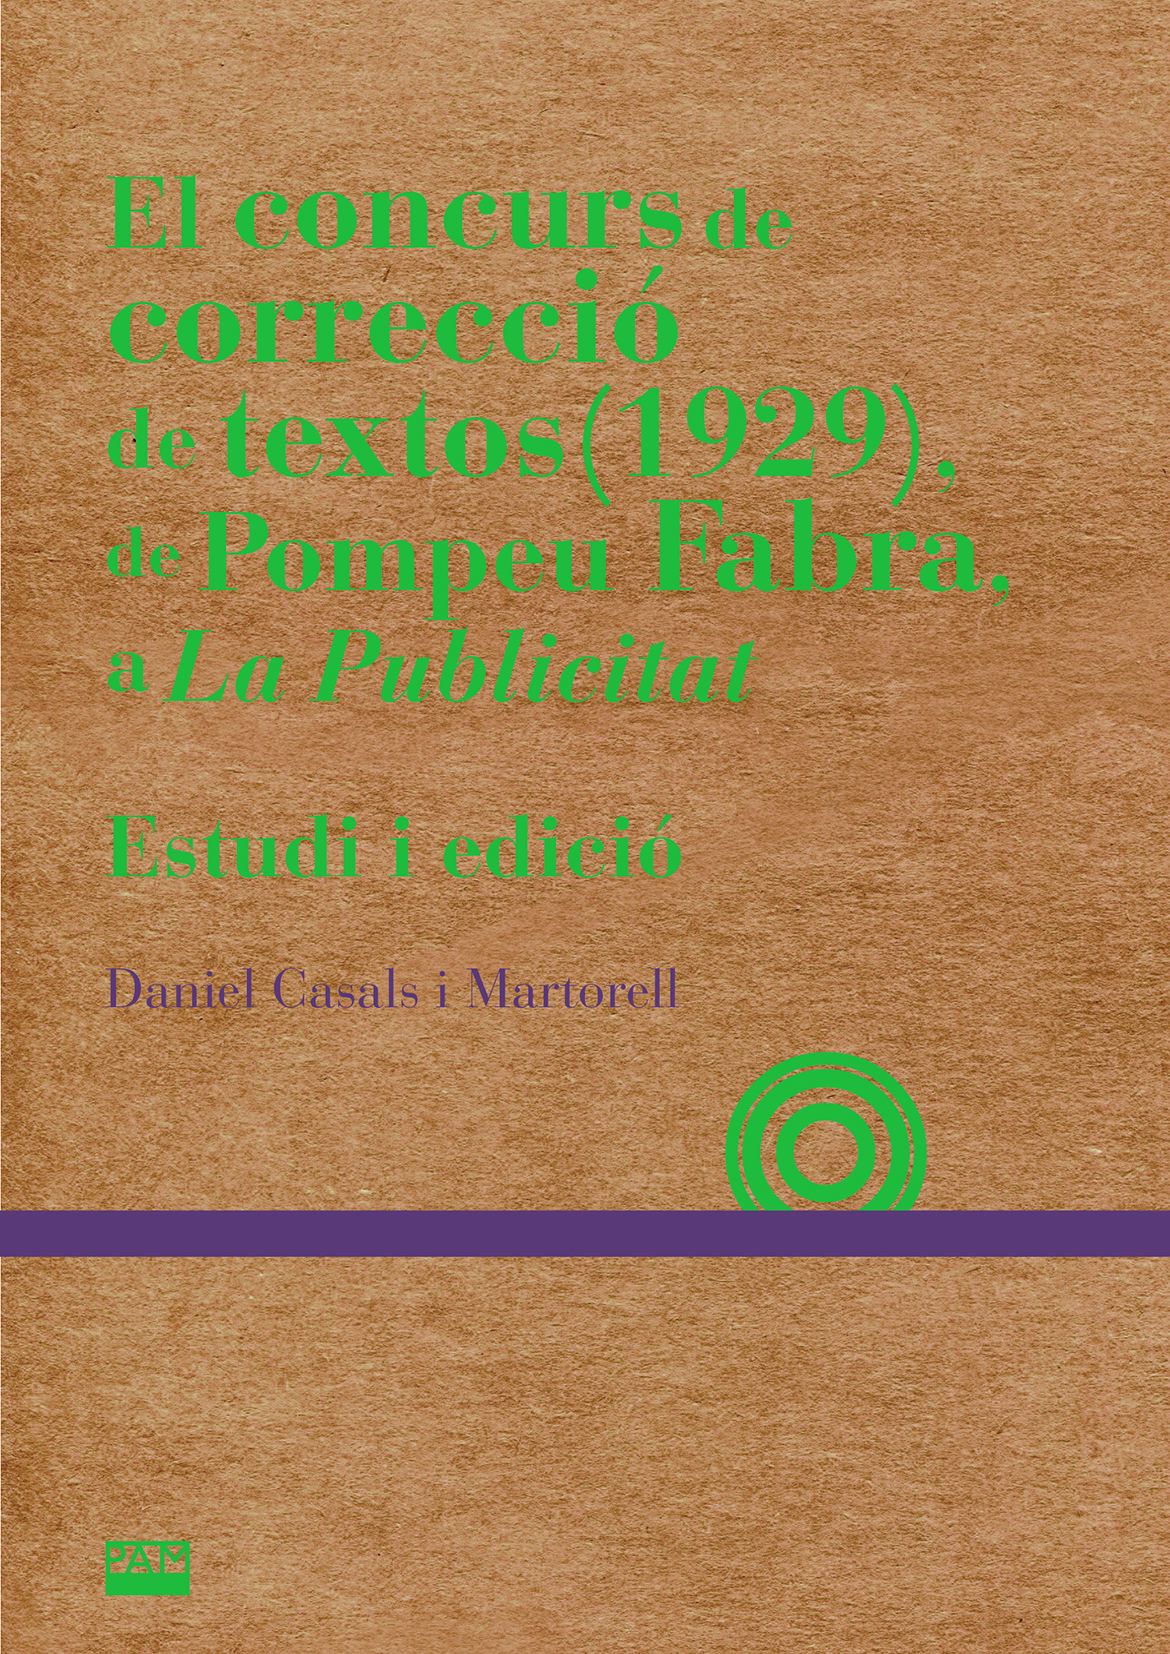 El concurs de correcció de textos (1929), de Pompeu Fabra, a La Publicitat